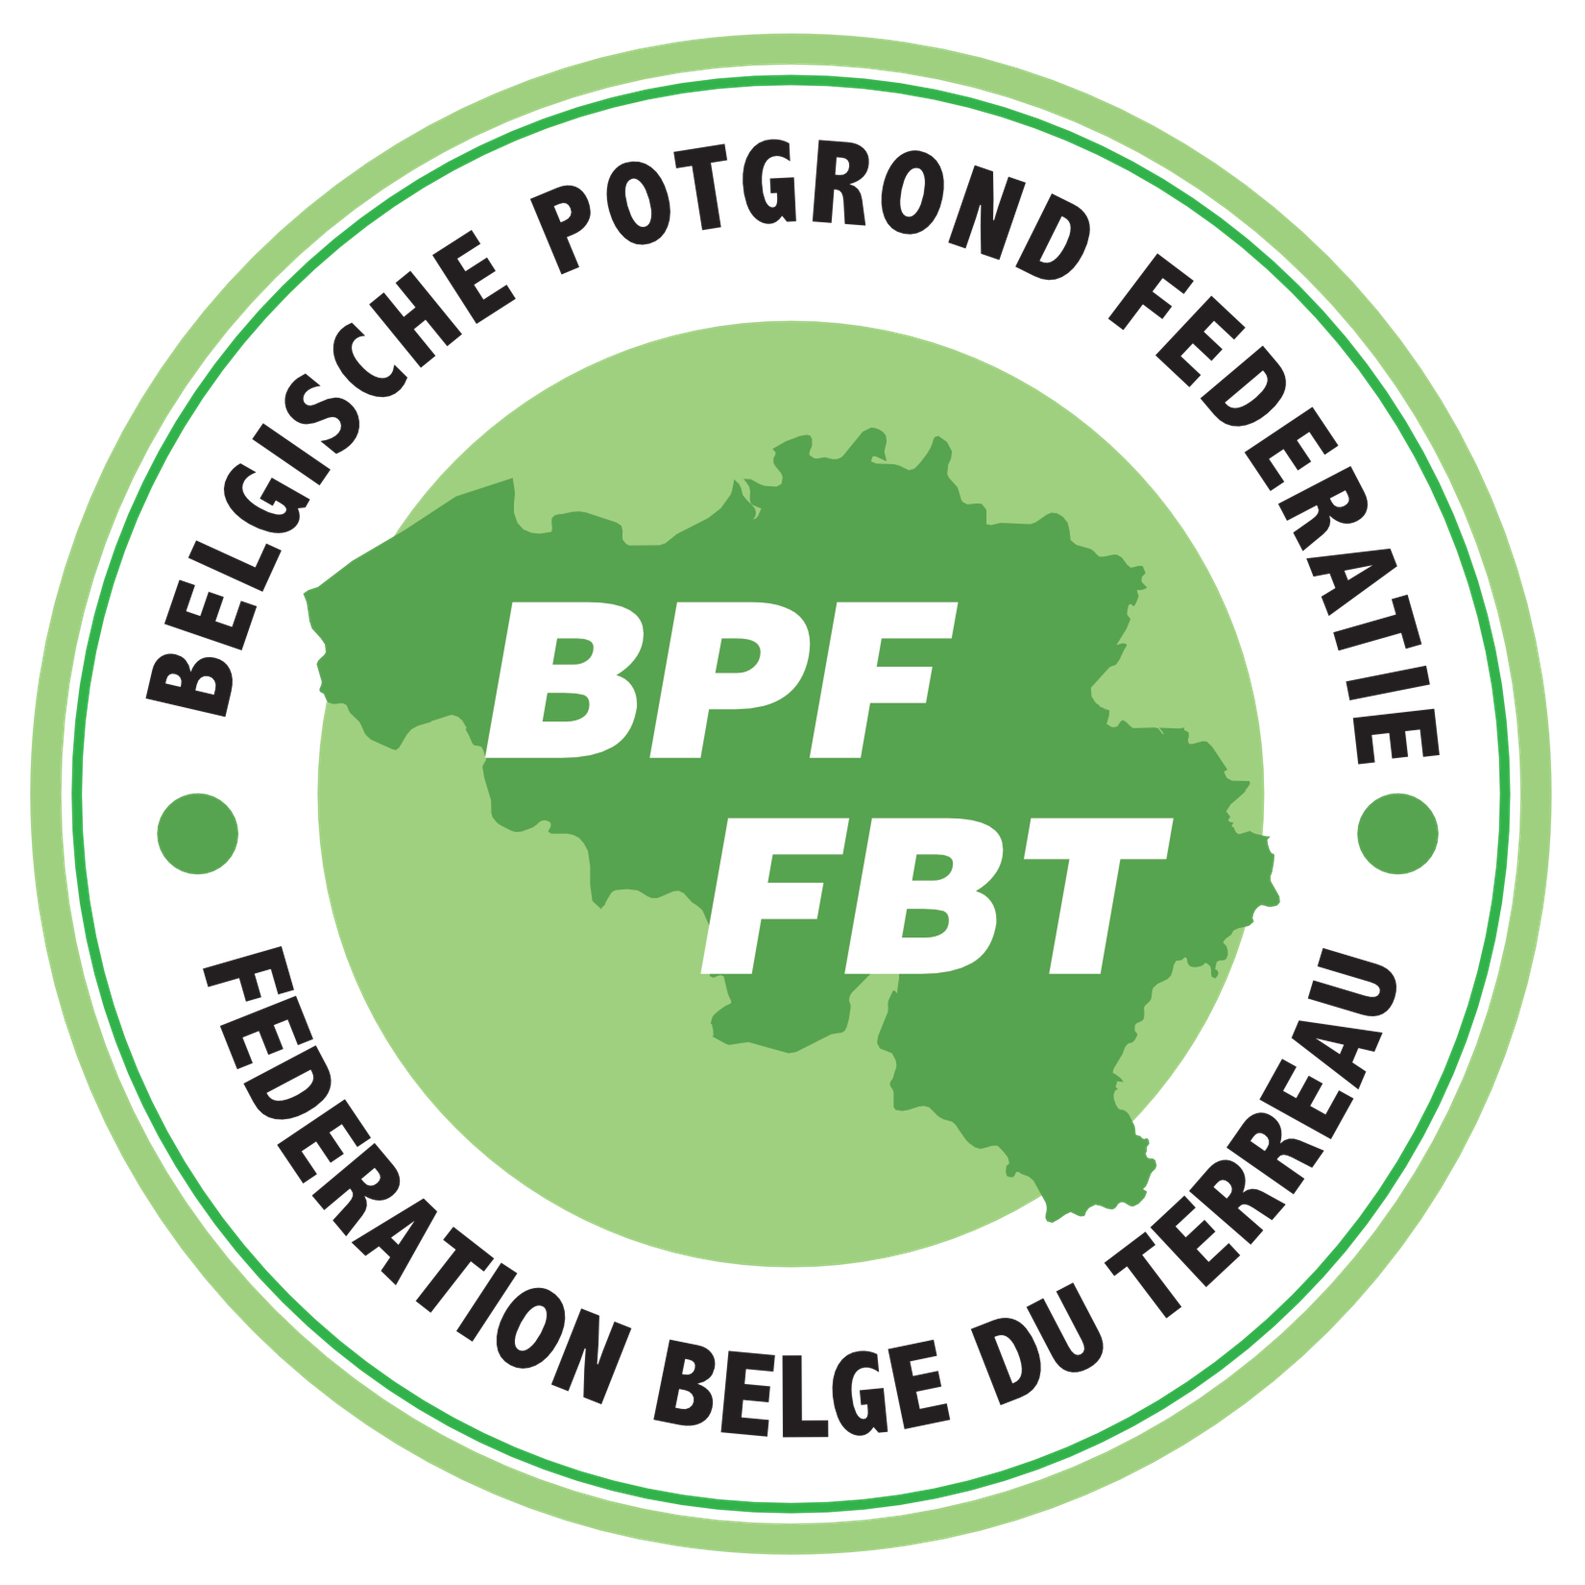 BPF - FBT